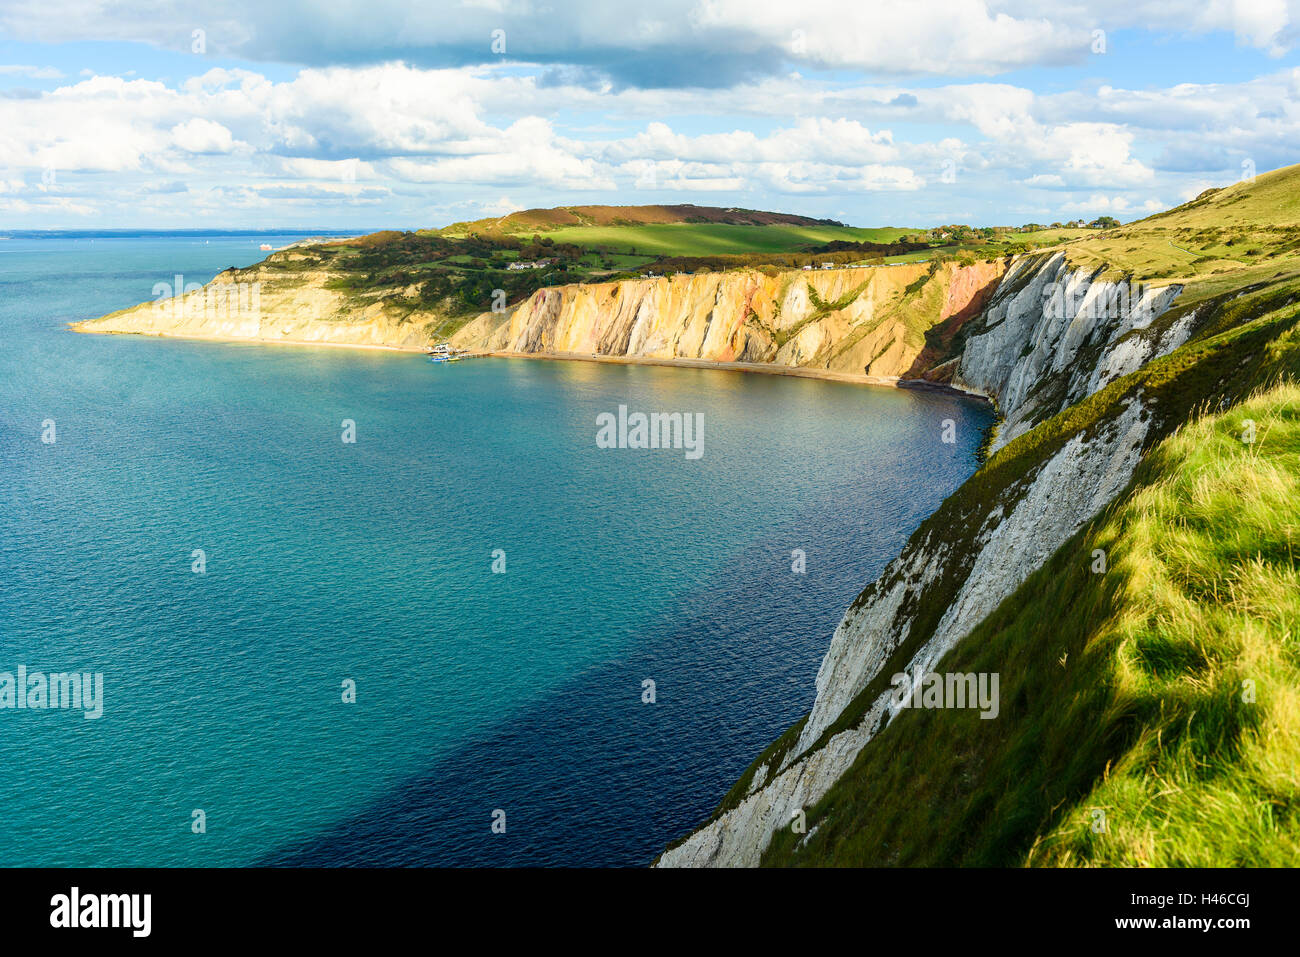 Vista panoramica della baia di allume Isle of Wight England Regno Unito con la cresta di Headon Warren dietro e Il Solent oltre Foto Stock